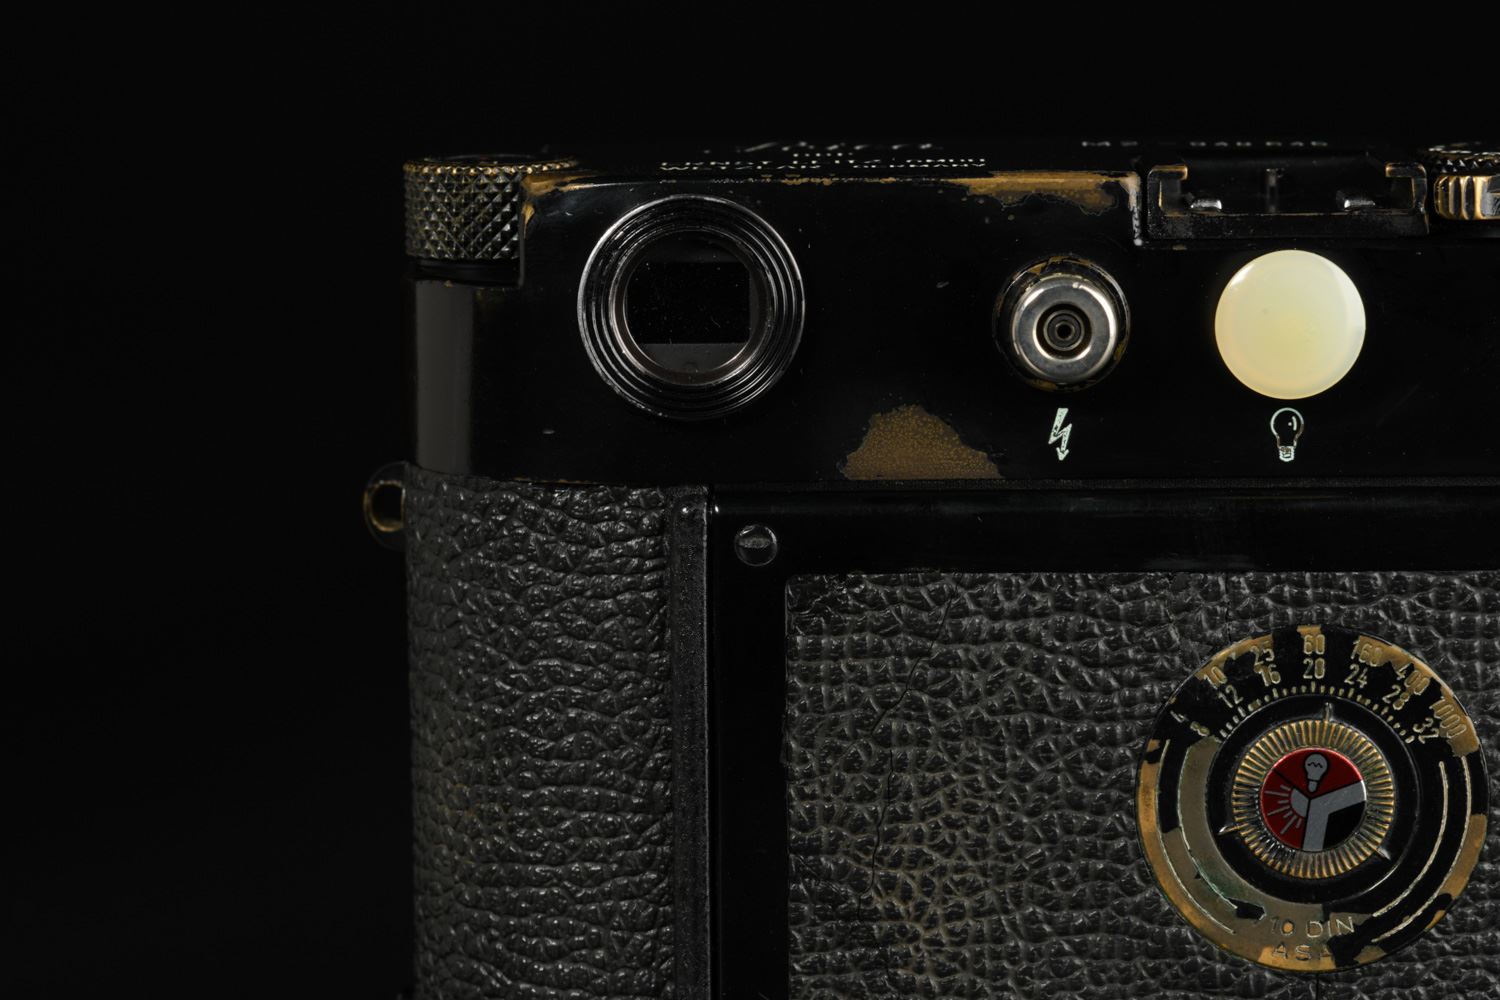 Picture of Leica M2 Button Original Black Paint